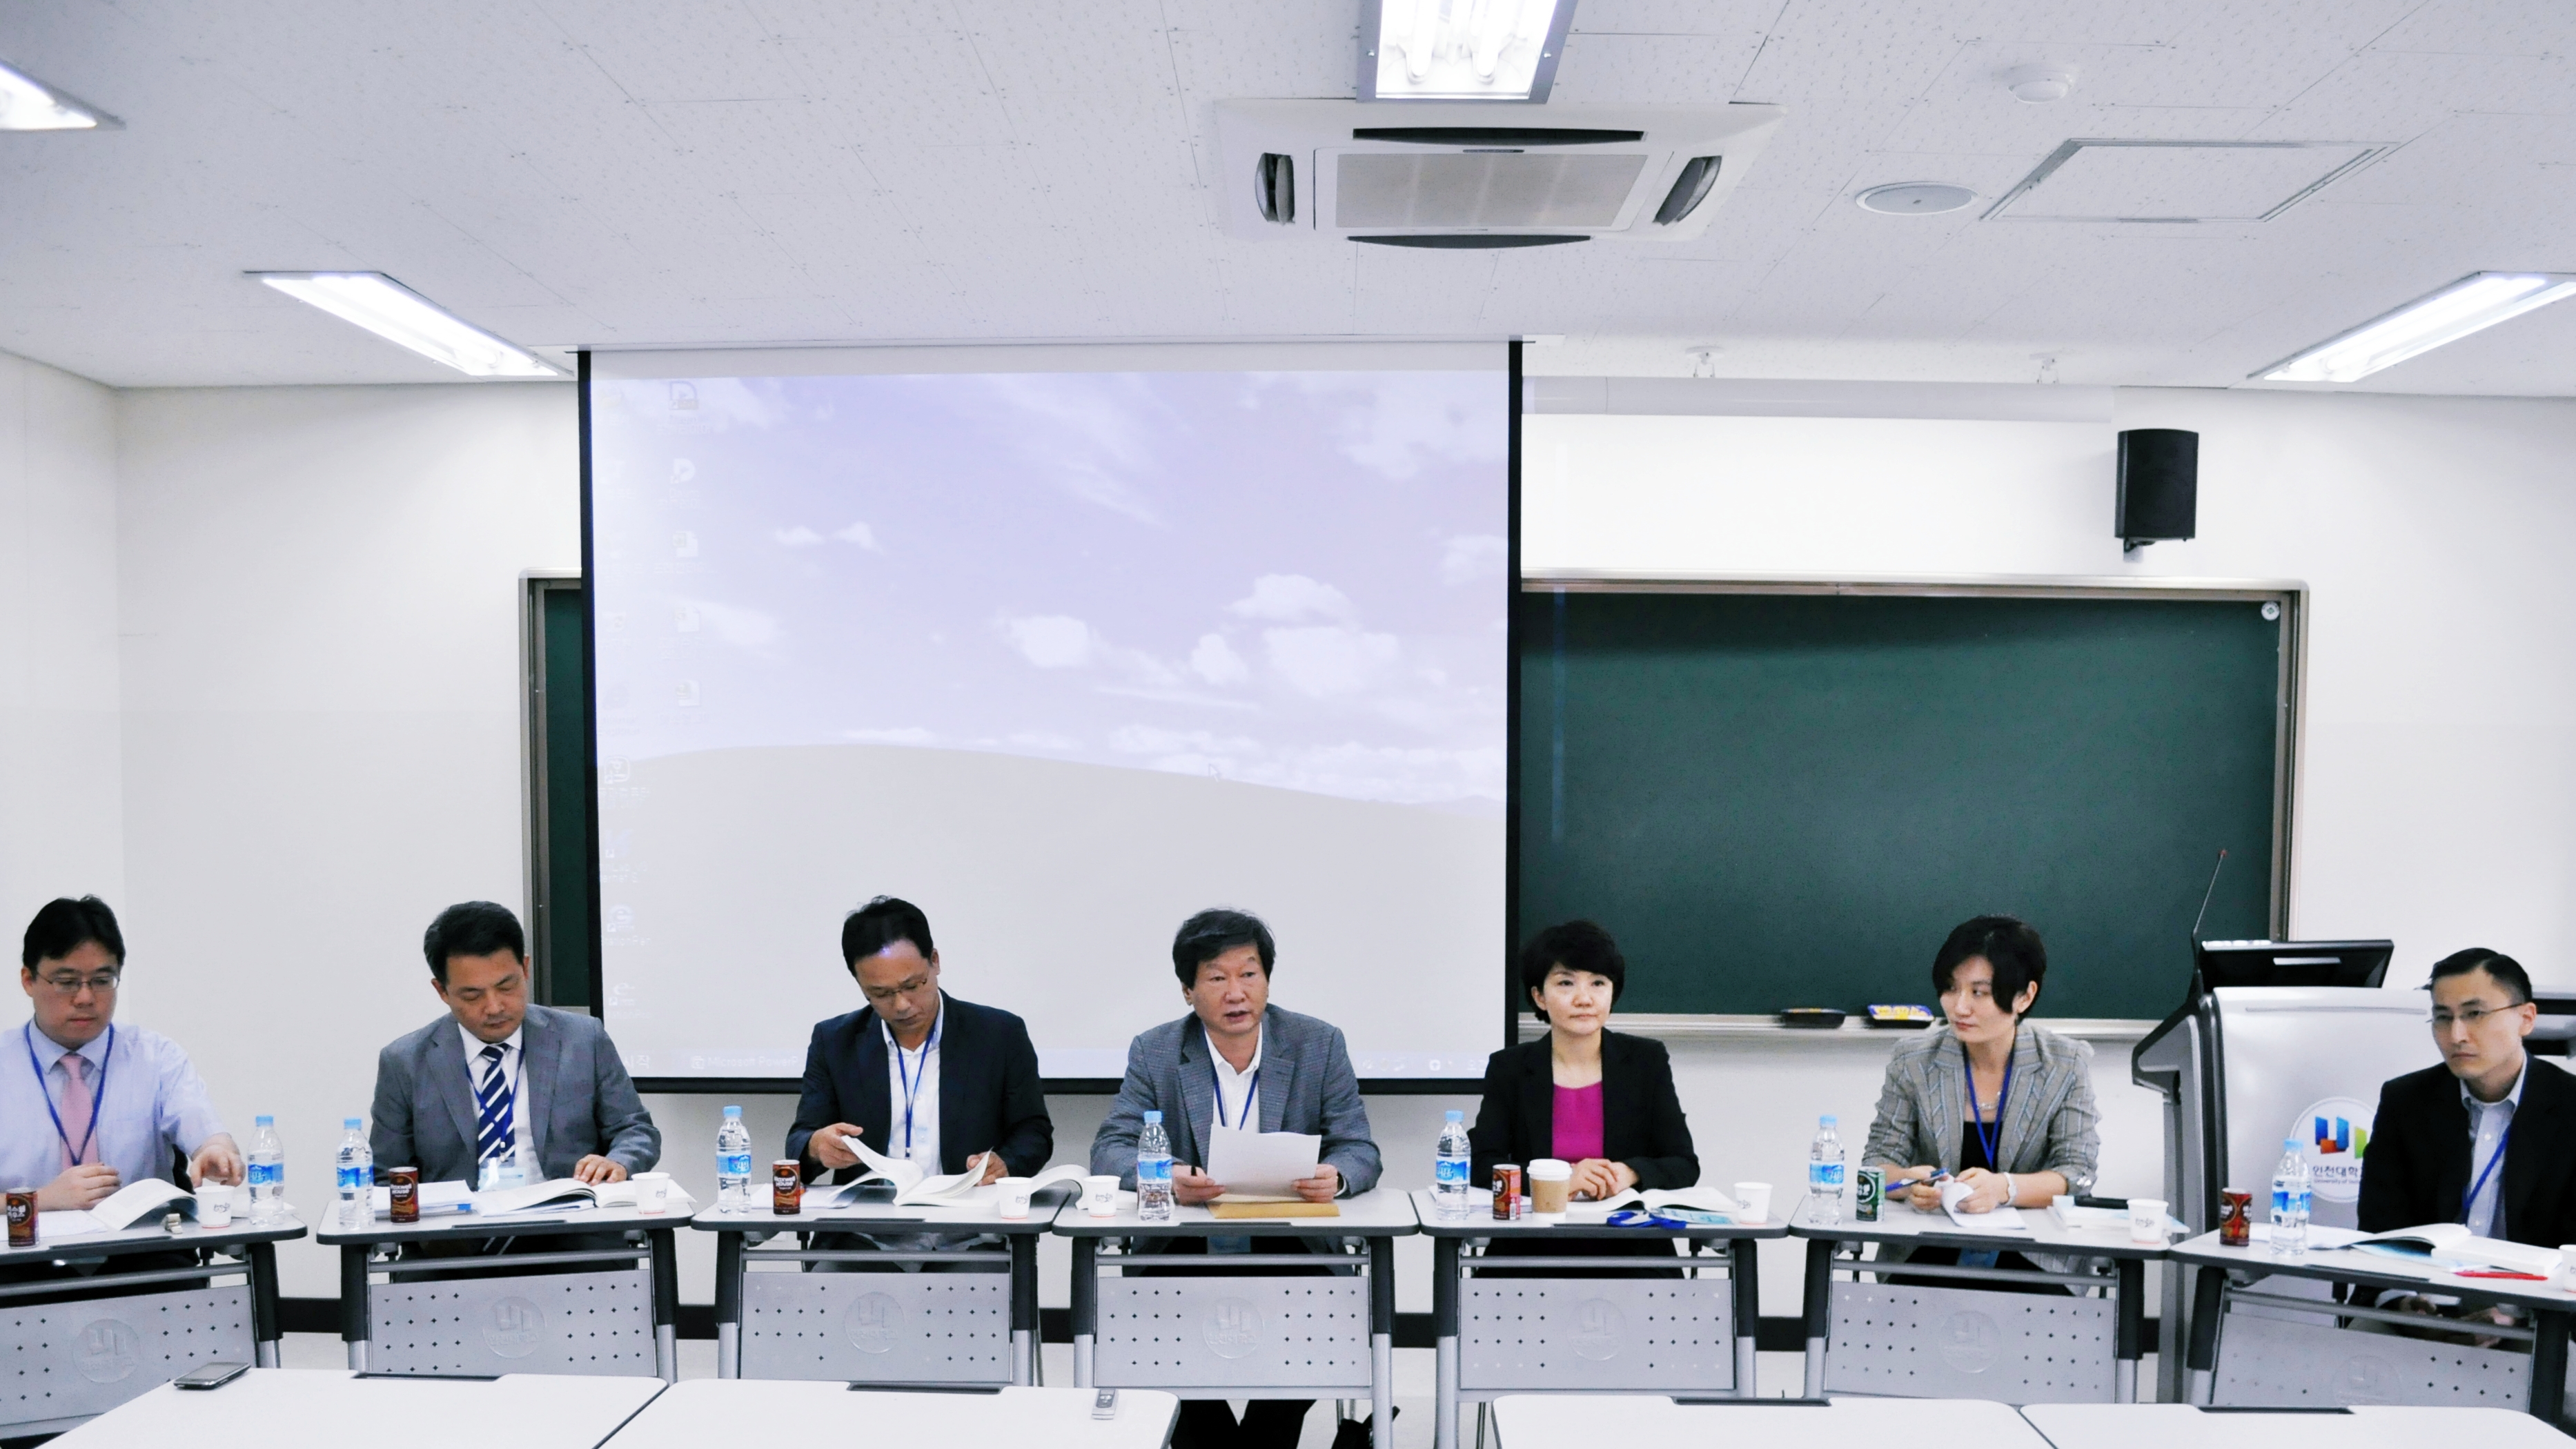 네트워크 시대의 소통과 한국’을 주제로 토론 준비 중인 참석자 들